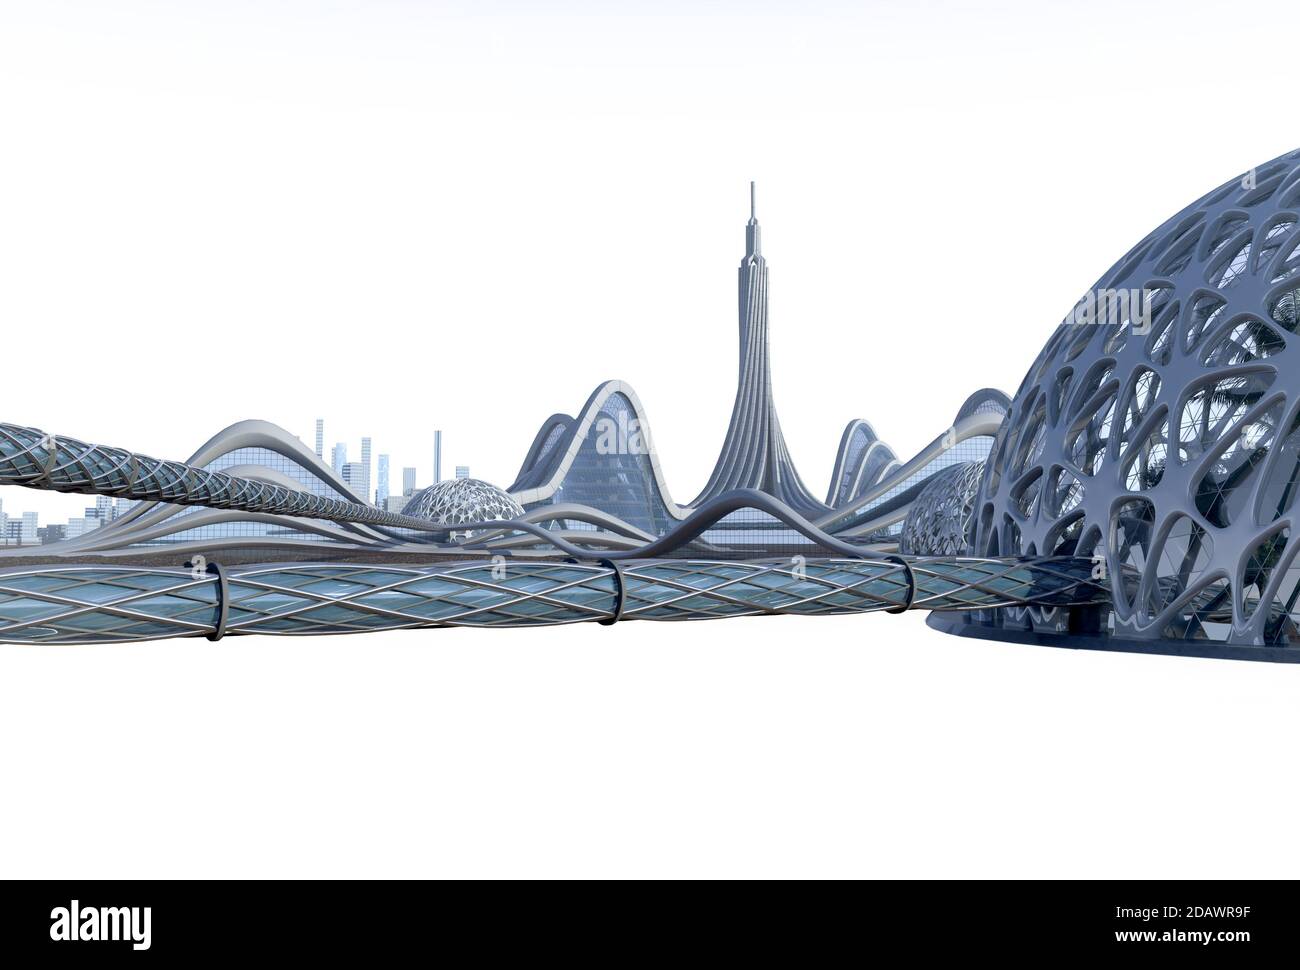 3D-Illustration einer Science-Fiction-Stadt mit futuristischer Architektur, organischen Kuppelstrukturen durch röhrenförmige Gehwege verbunden. Der Isolationspfad ist i Stockfoto